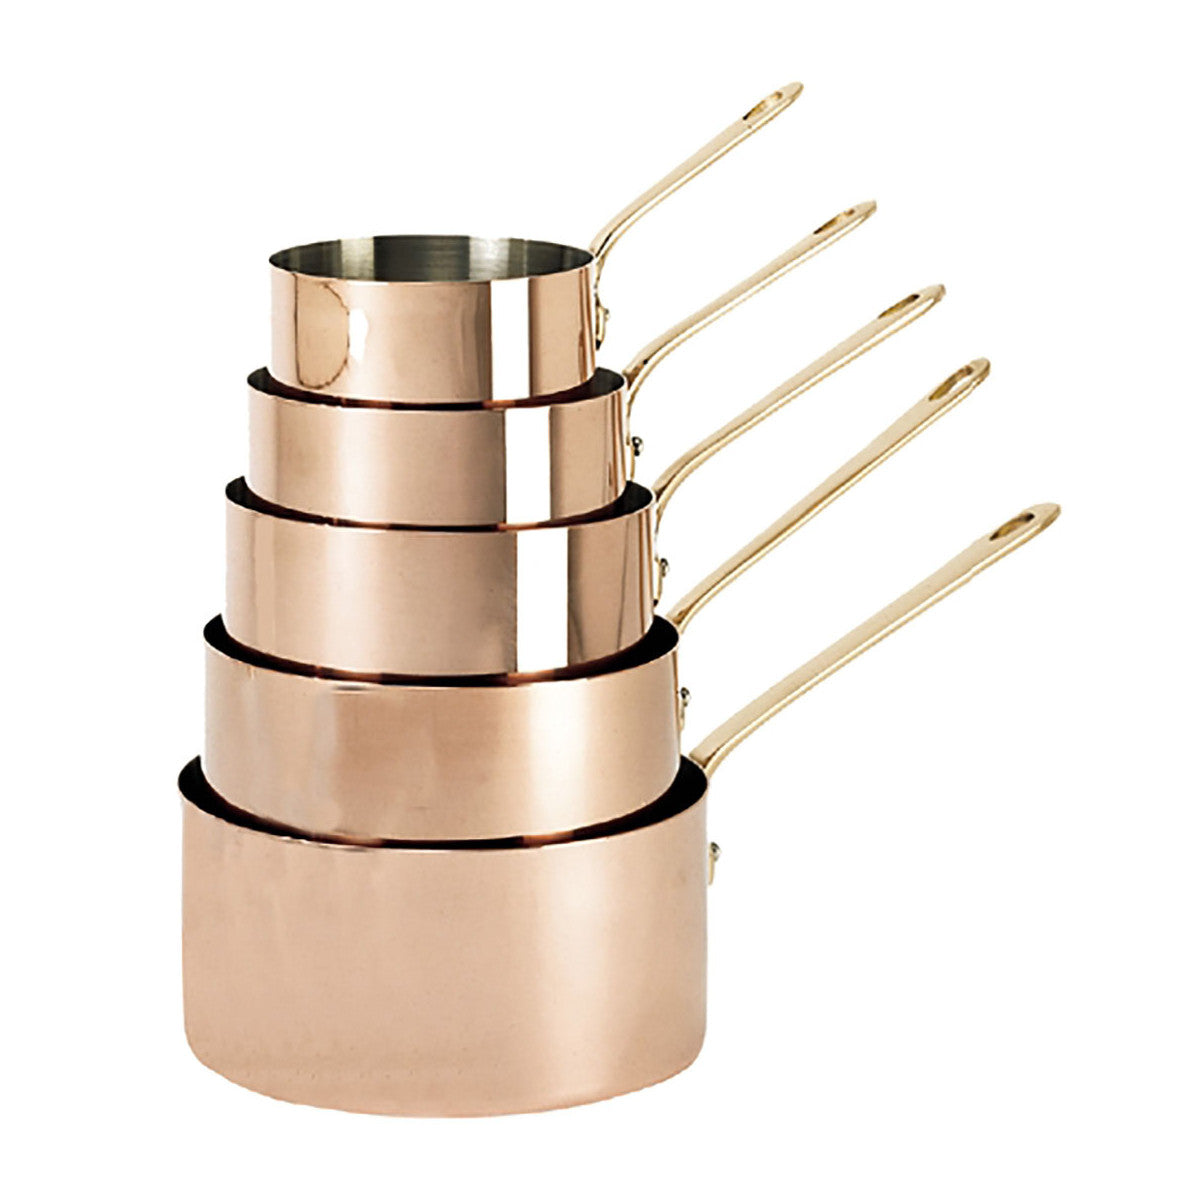 INOCUIVRE SERVICE Copper Saucepan with Brass Handles